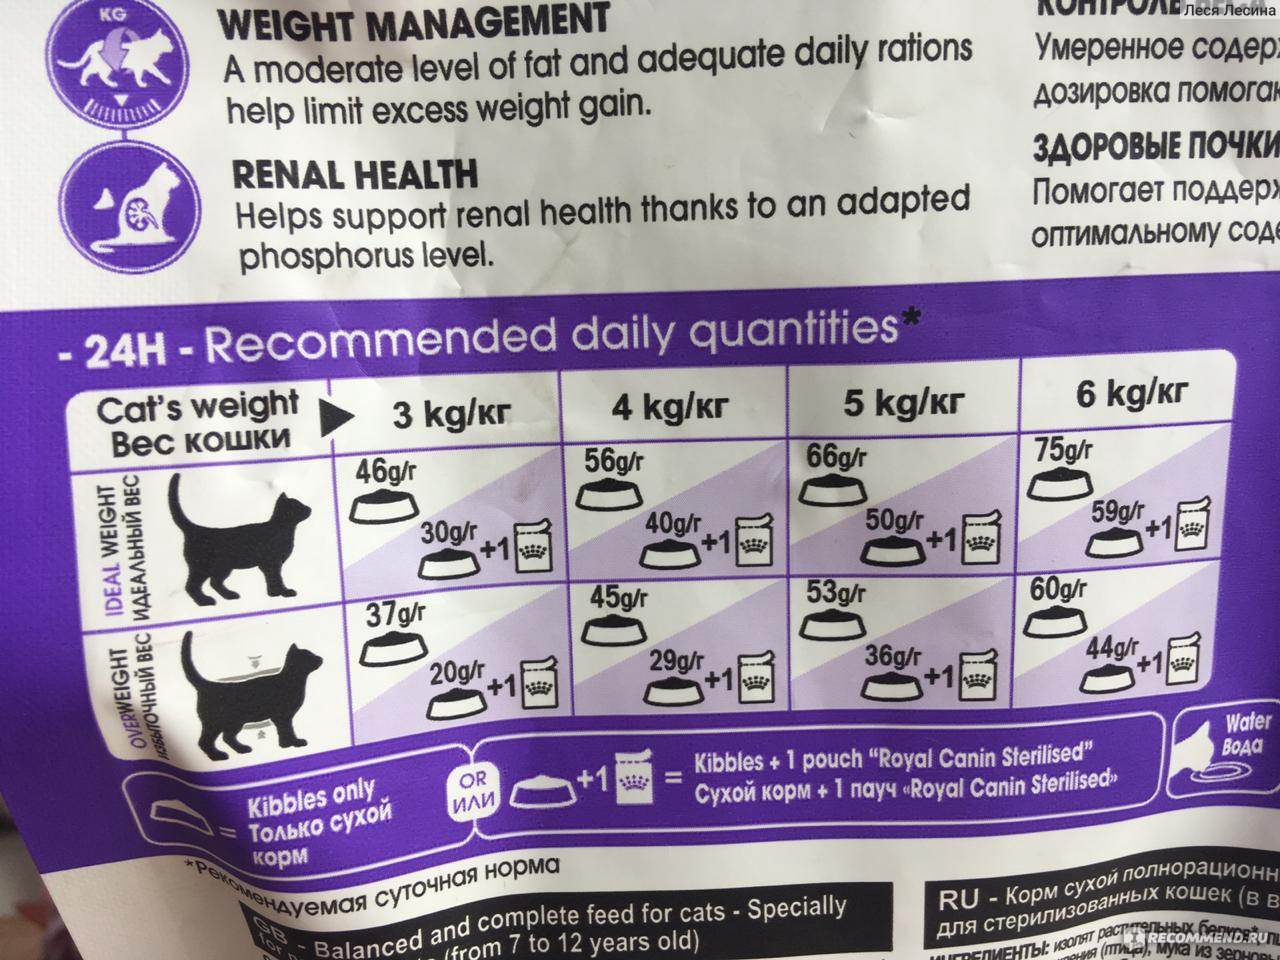 Сколько сухого или влажного корма нужно давать кошке в день: расчет суточной порции, физиологические особенности кошки, когда следует убавить или прибавить еды